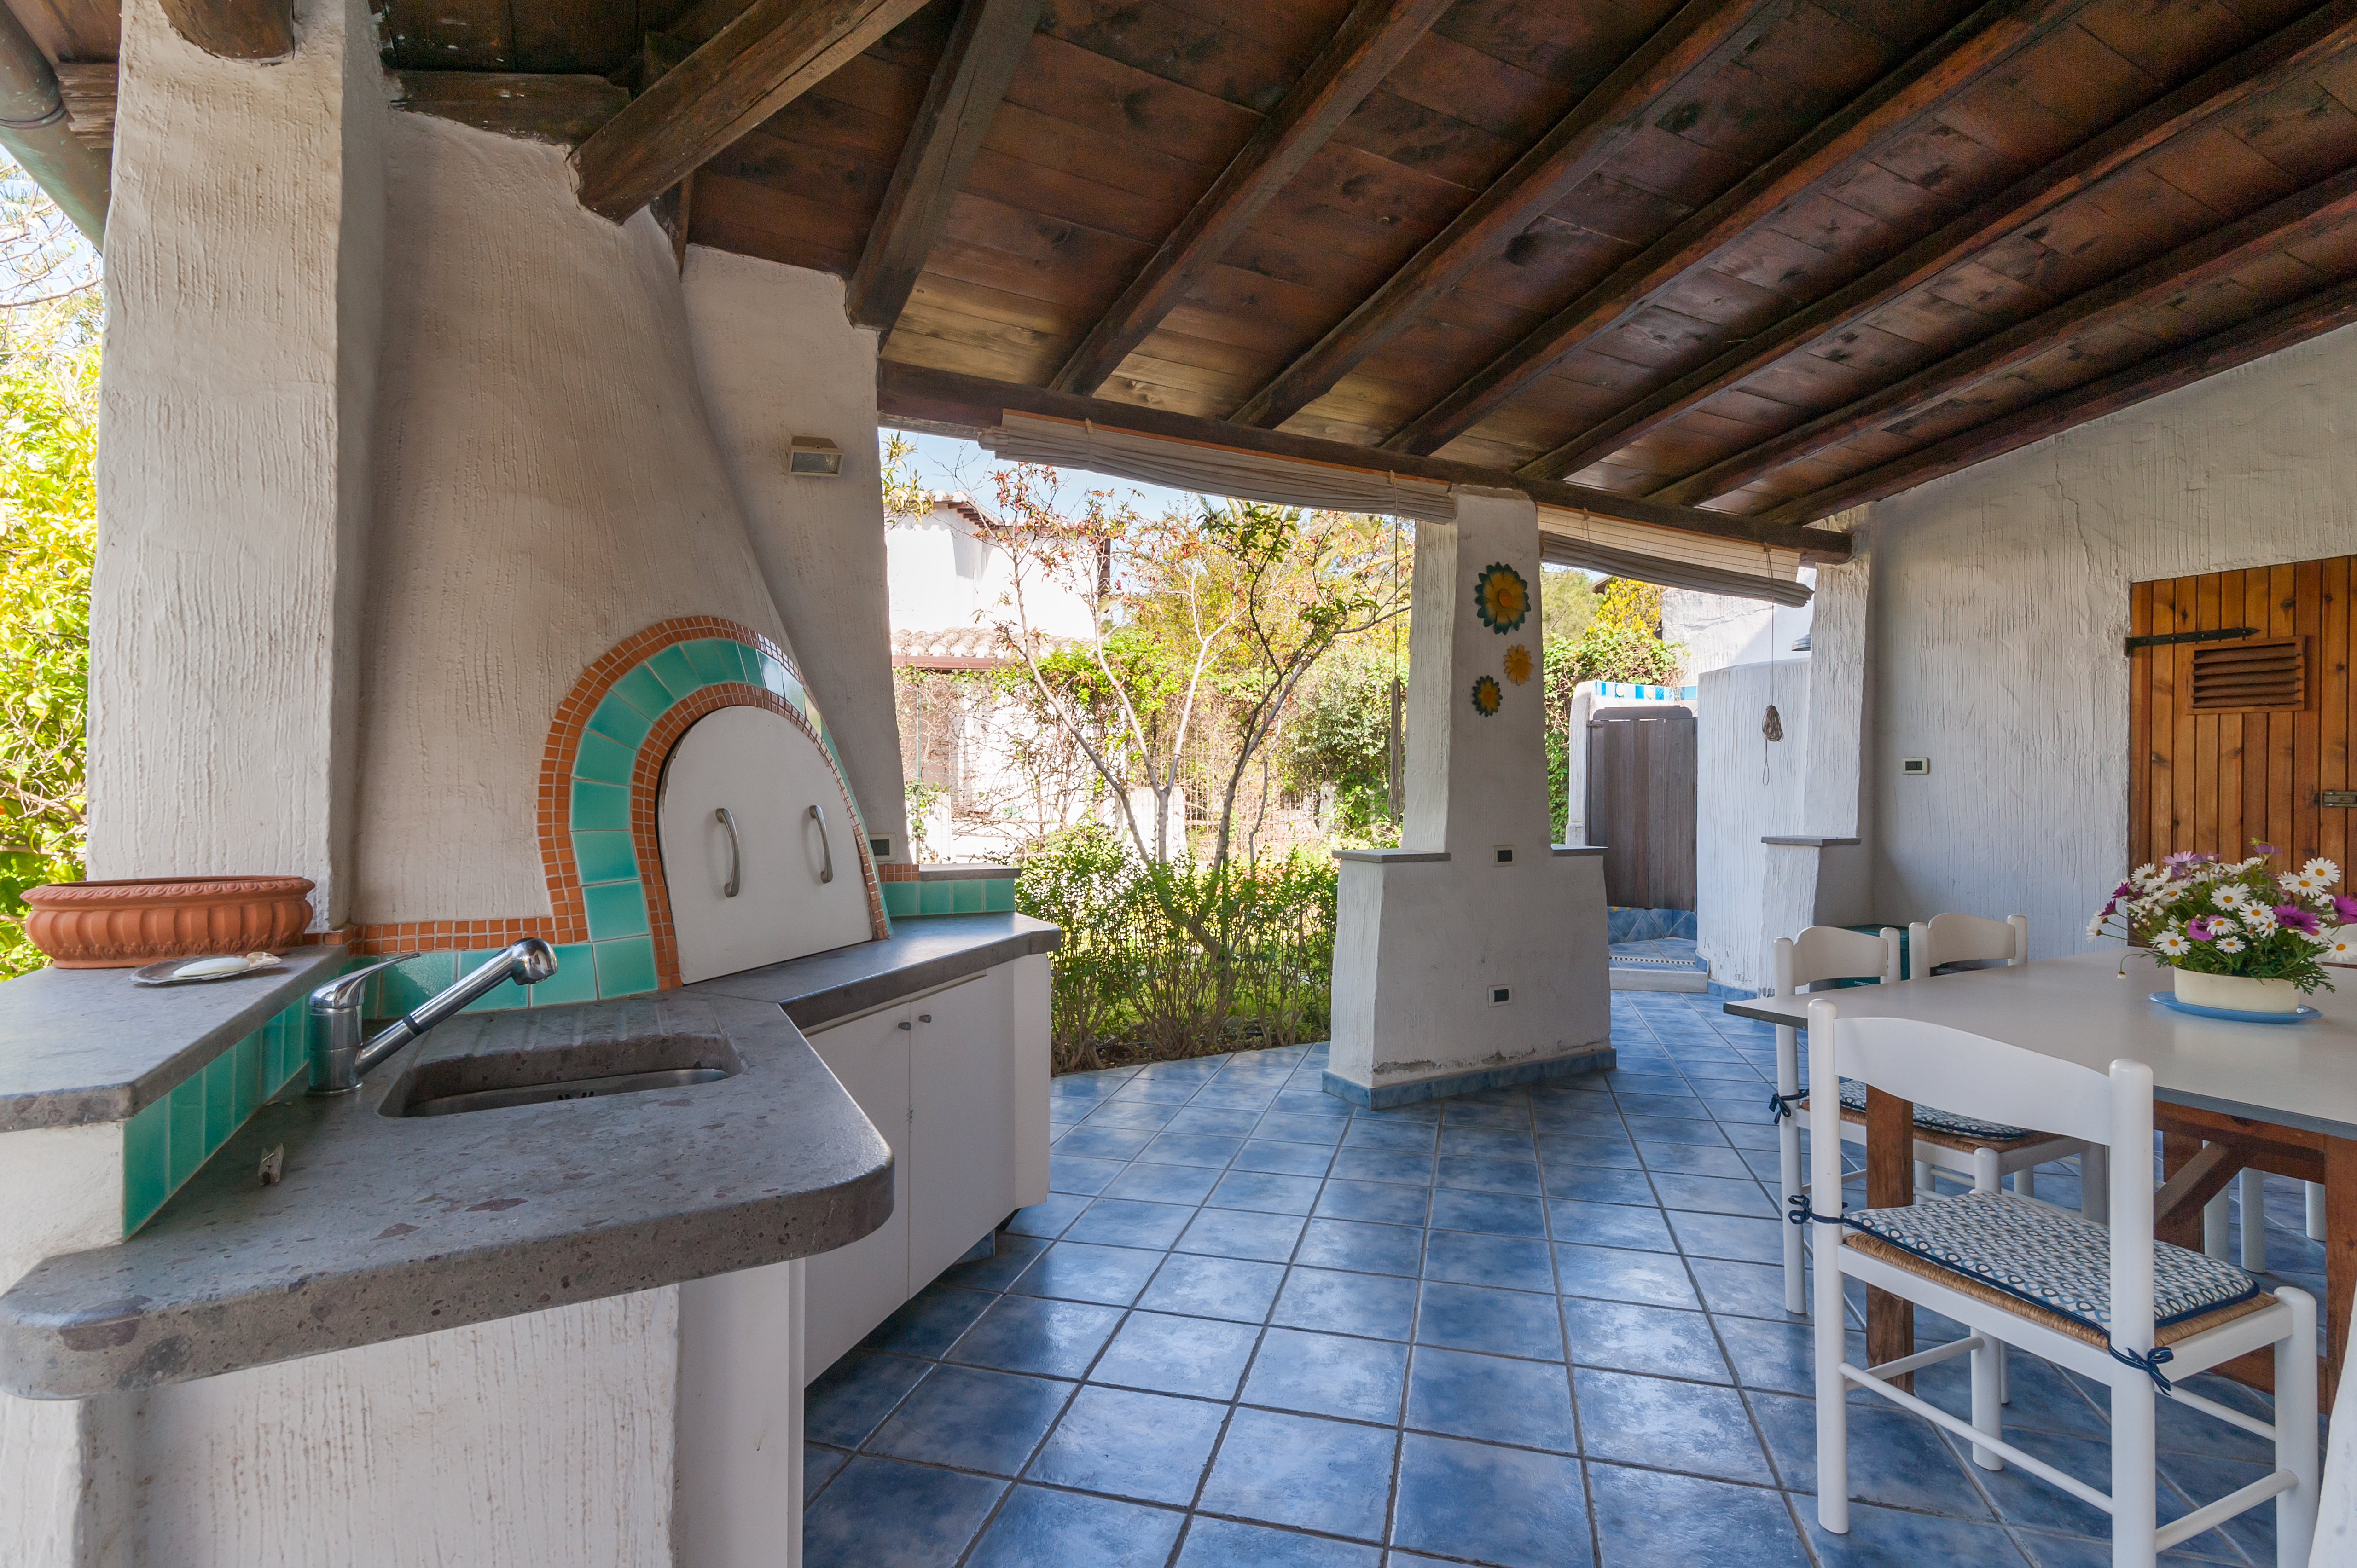 Sardegna Del Sud Villa Al Mare Free Wi Fi Villas For Rent In Quartu Sant Elena Sardinia Italy